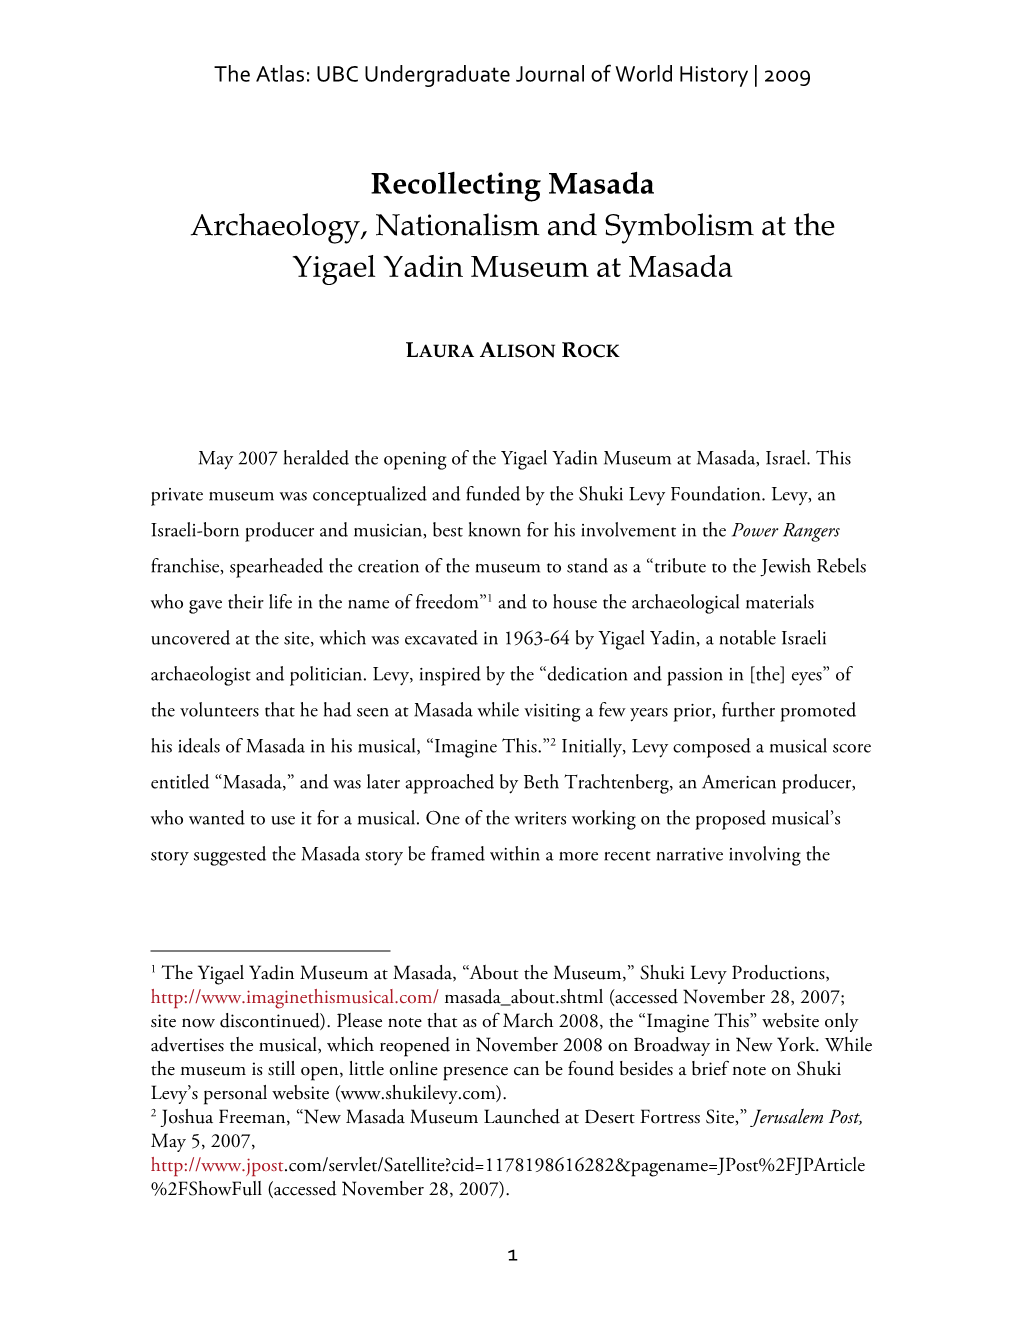 Recollecting Masada Archaeology, Nationalism and Symbolism at the Yigael Yadin Museum at Masada